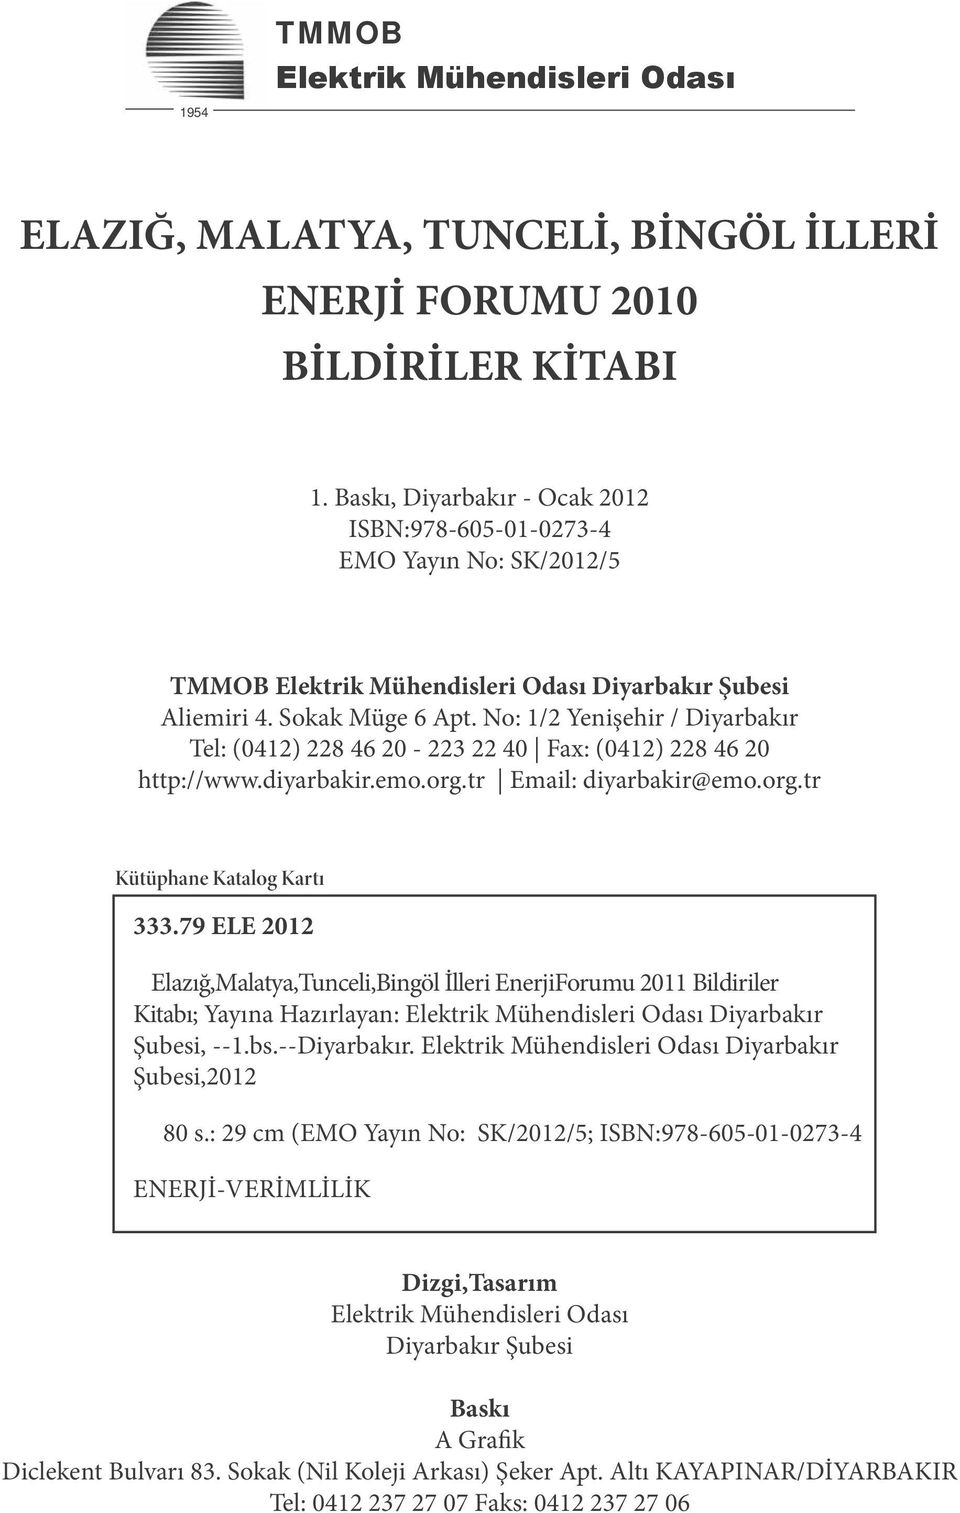 No: 1/2 Yenişehir / Diyarbakır Tel: (0412) 228 46 20-223 22 40 Fax: (0412) 228 46 20 http://www.diyarbakir.emo.org.tr Email: diyarbakir@emo.org.tr Kütüphane Katalog Kartı 333.